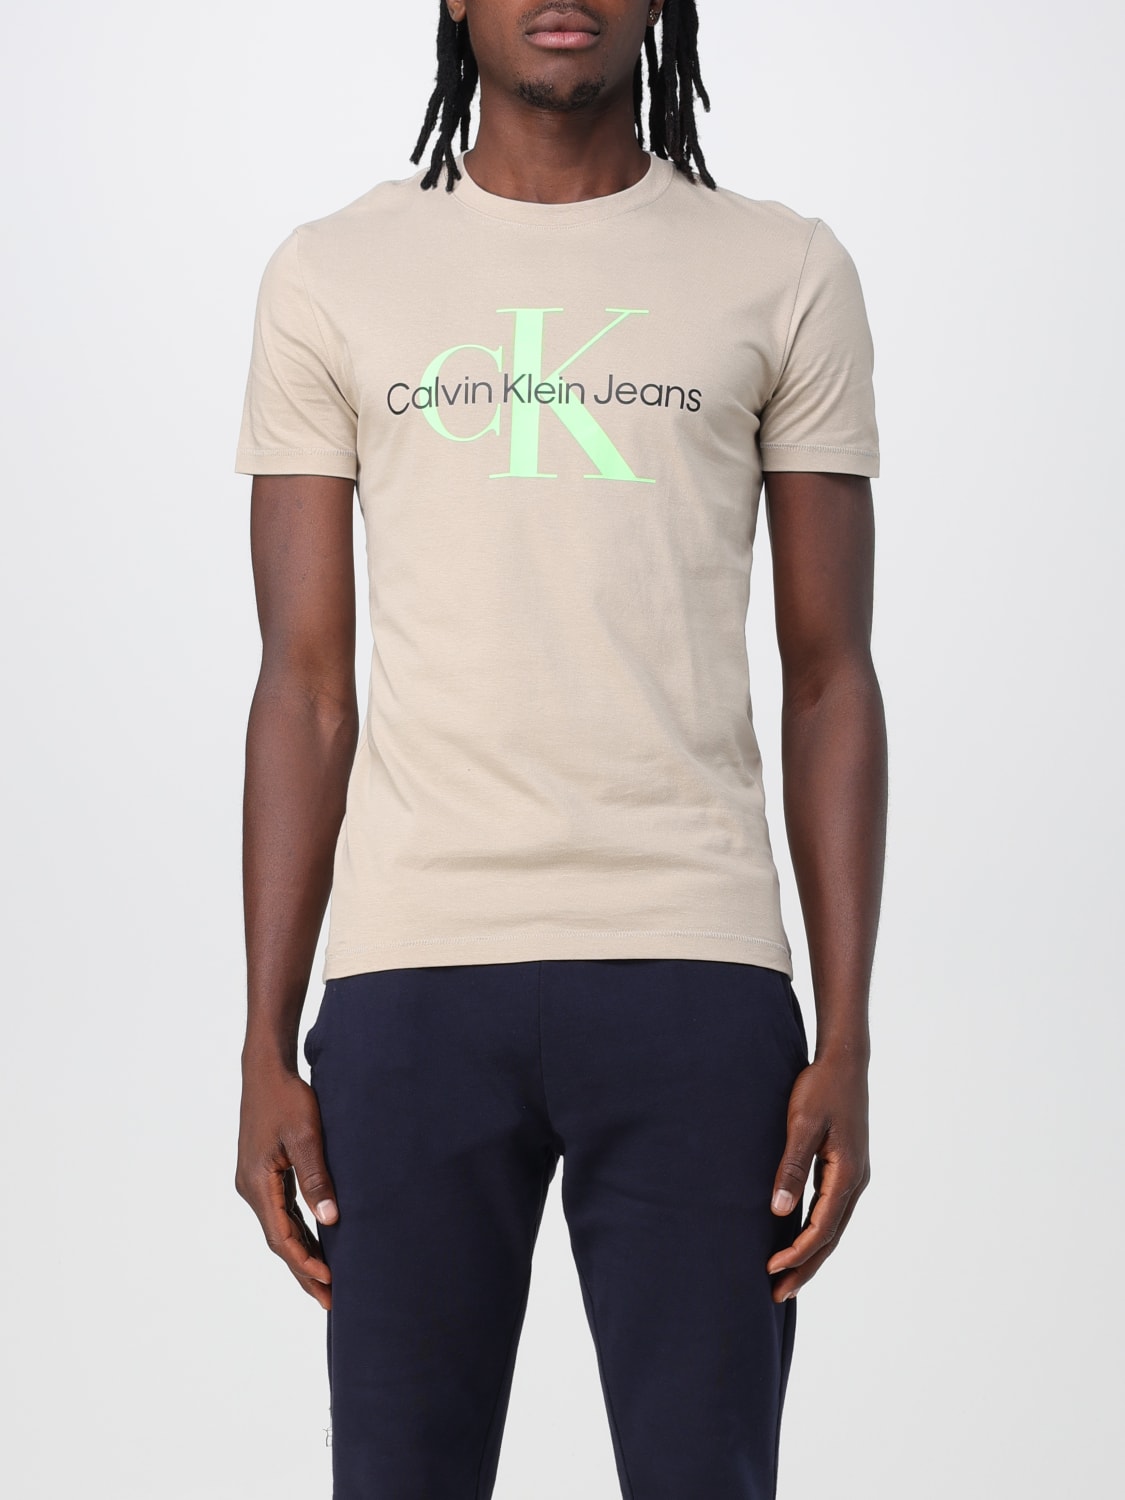 Calvin Klein Jeans - T-shirt man